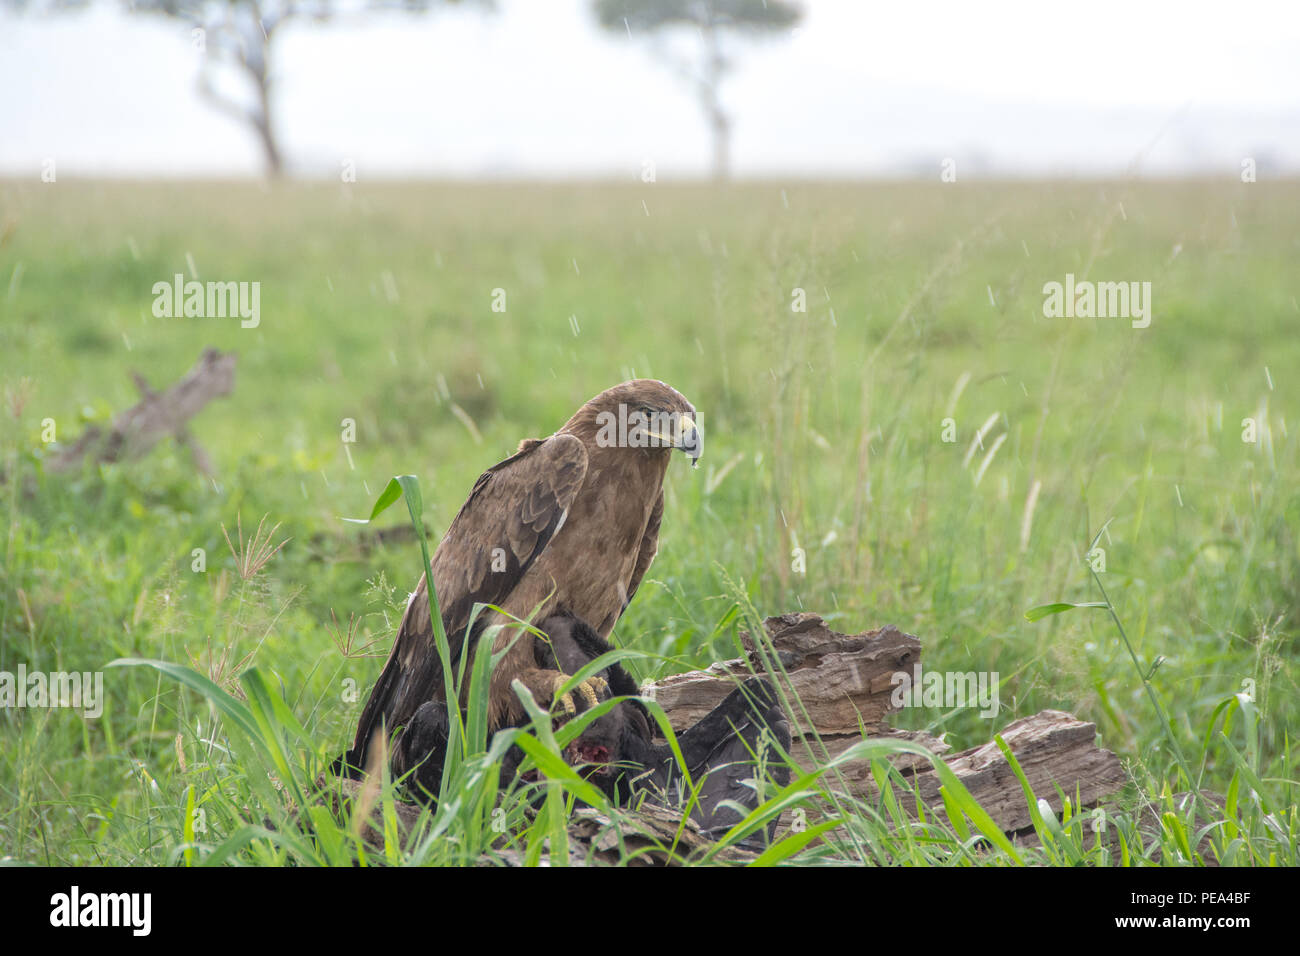 Un águila coronada africana alimentarse de otra especie de ave en las lluvias del Parque Nacional del Serengeti, Tanzania. Foto de stock